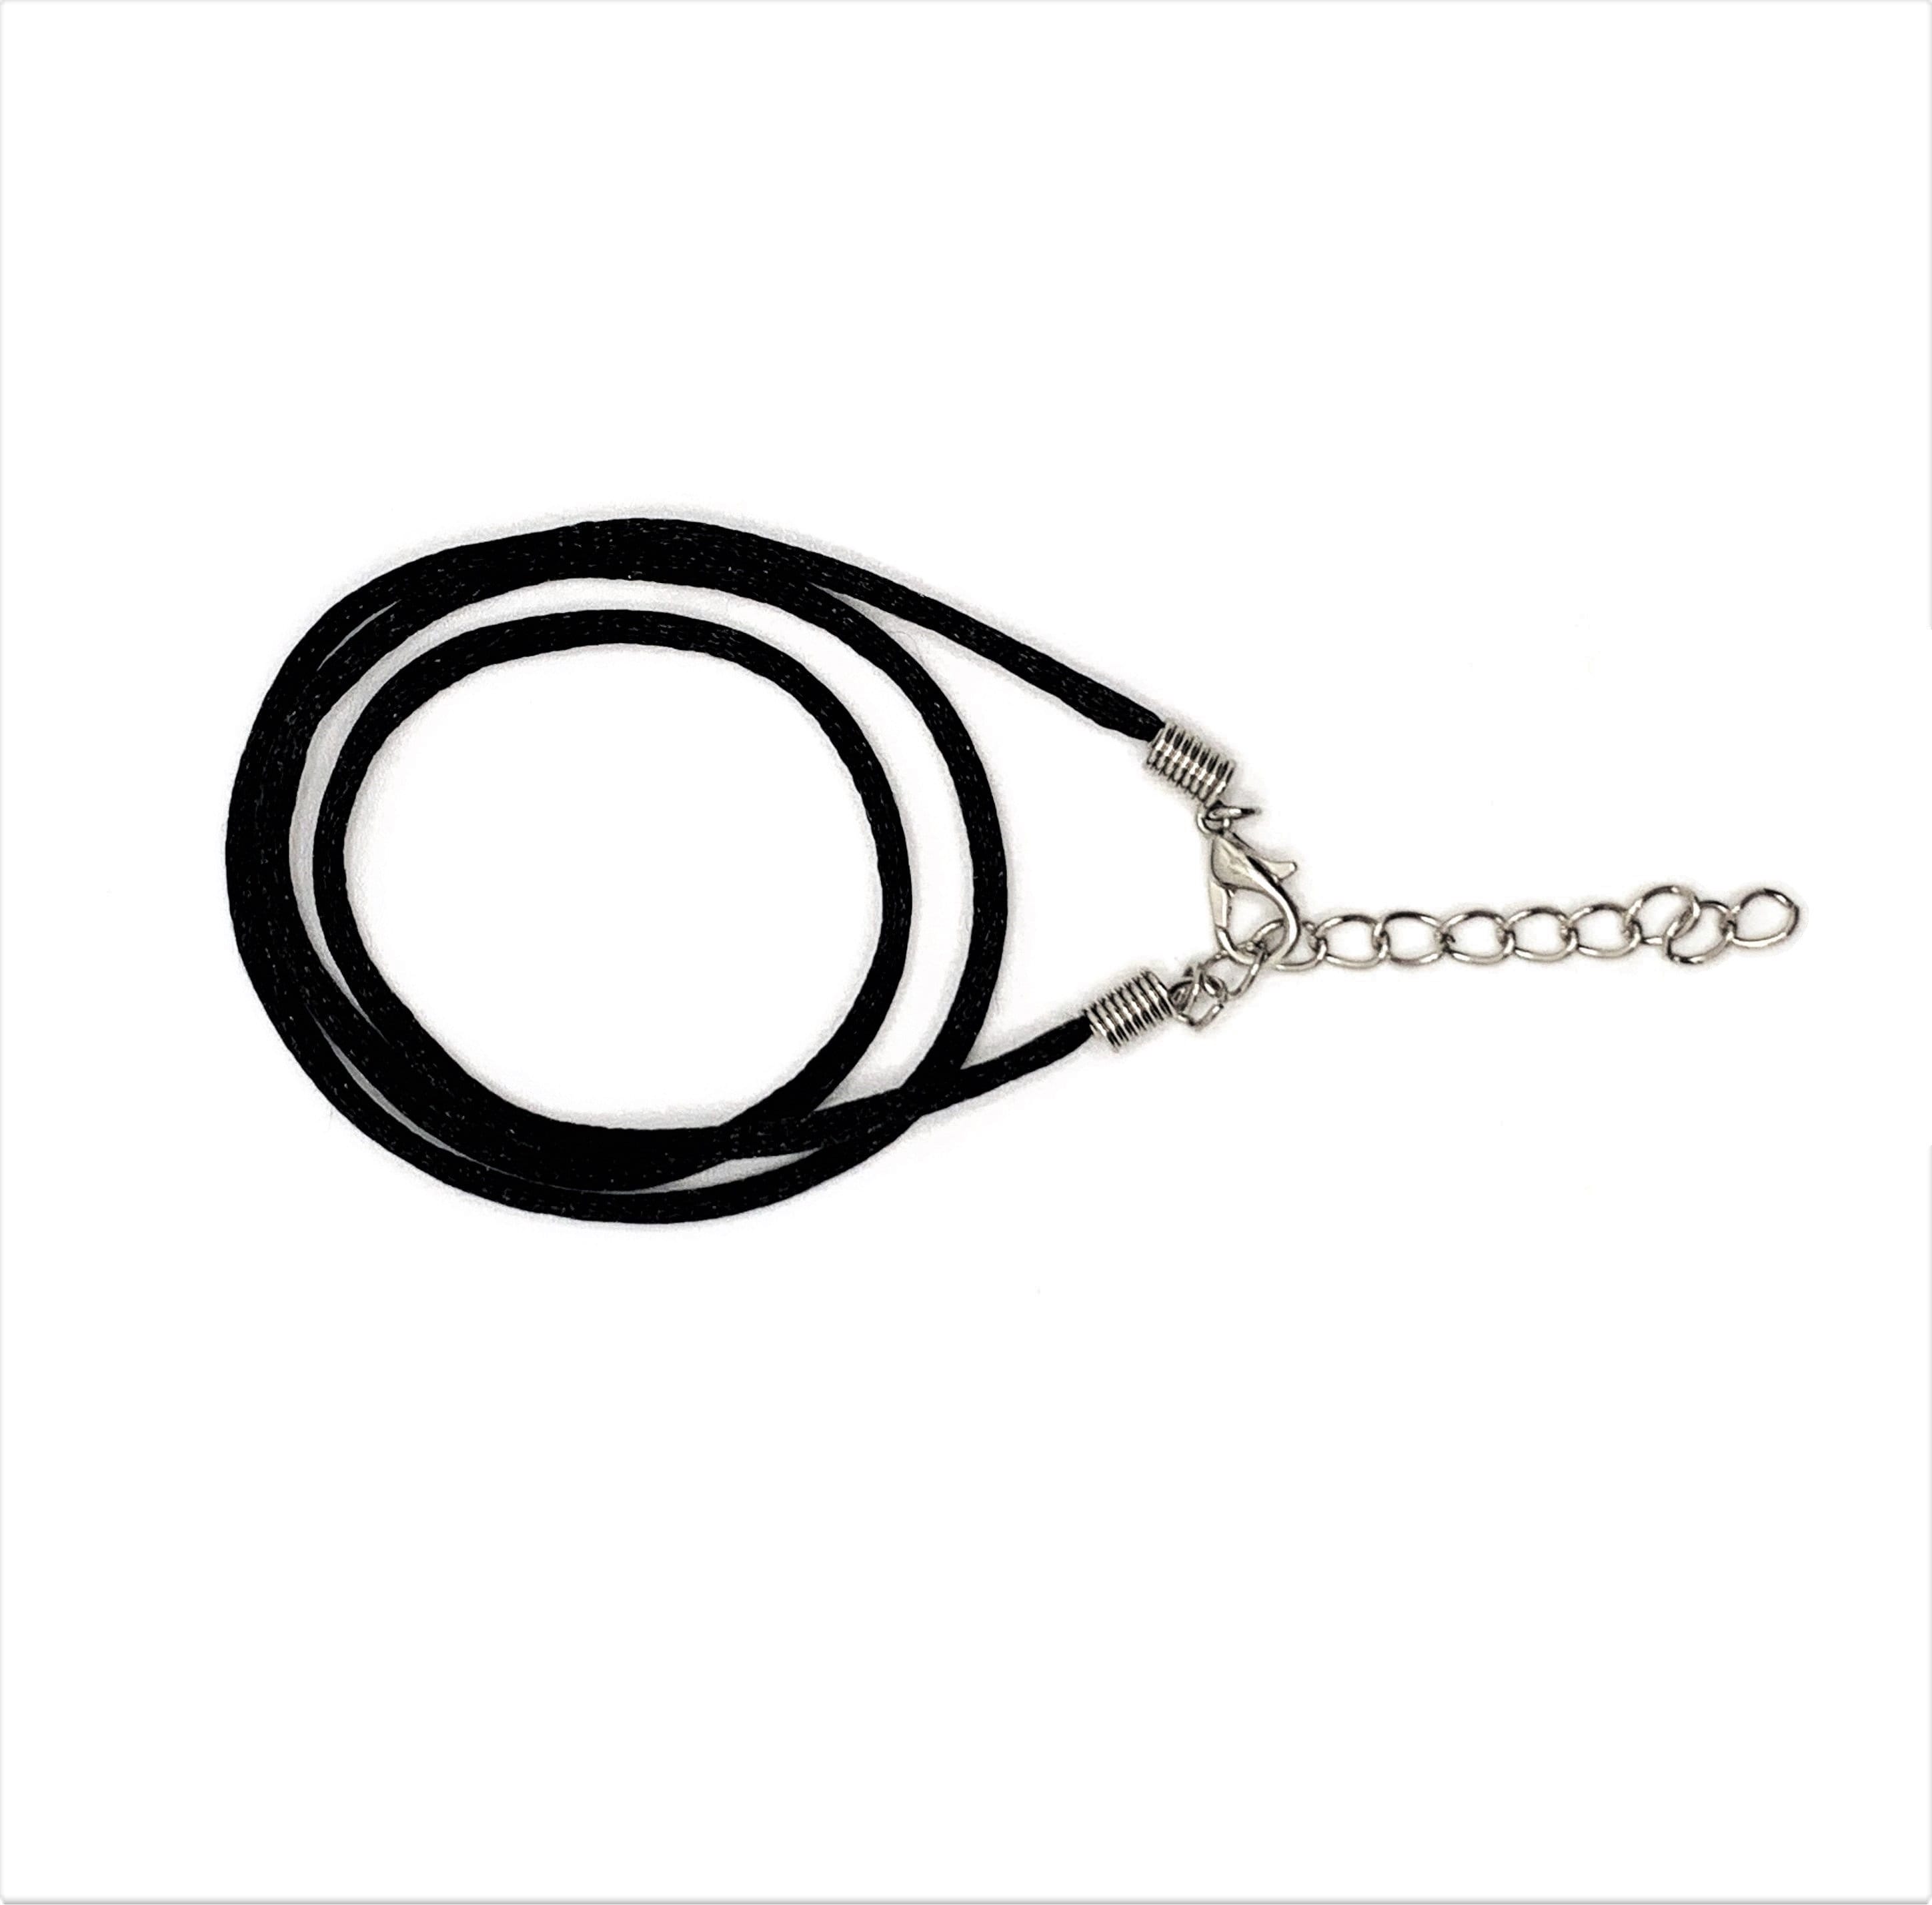 Nylon Cord for Bracelets, 1 Roll 147 Feet 0.8mm Beading String Cord for  Blinds String, Braided Bracelets, Jewelry Making